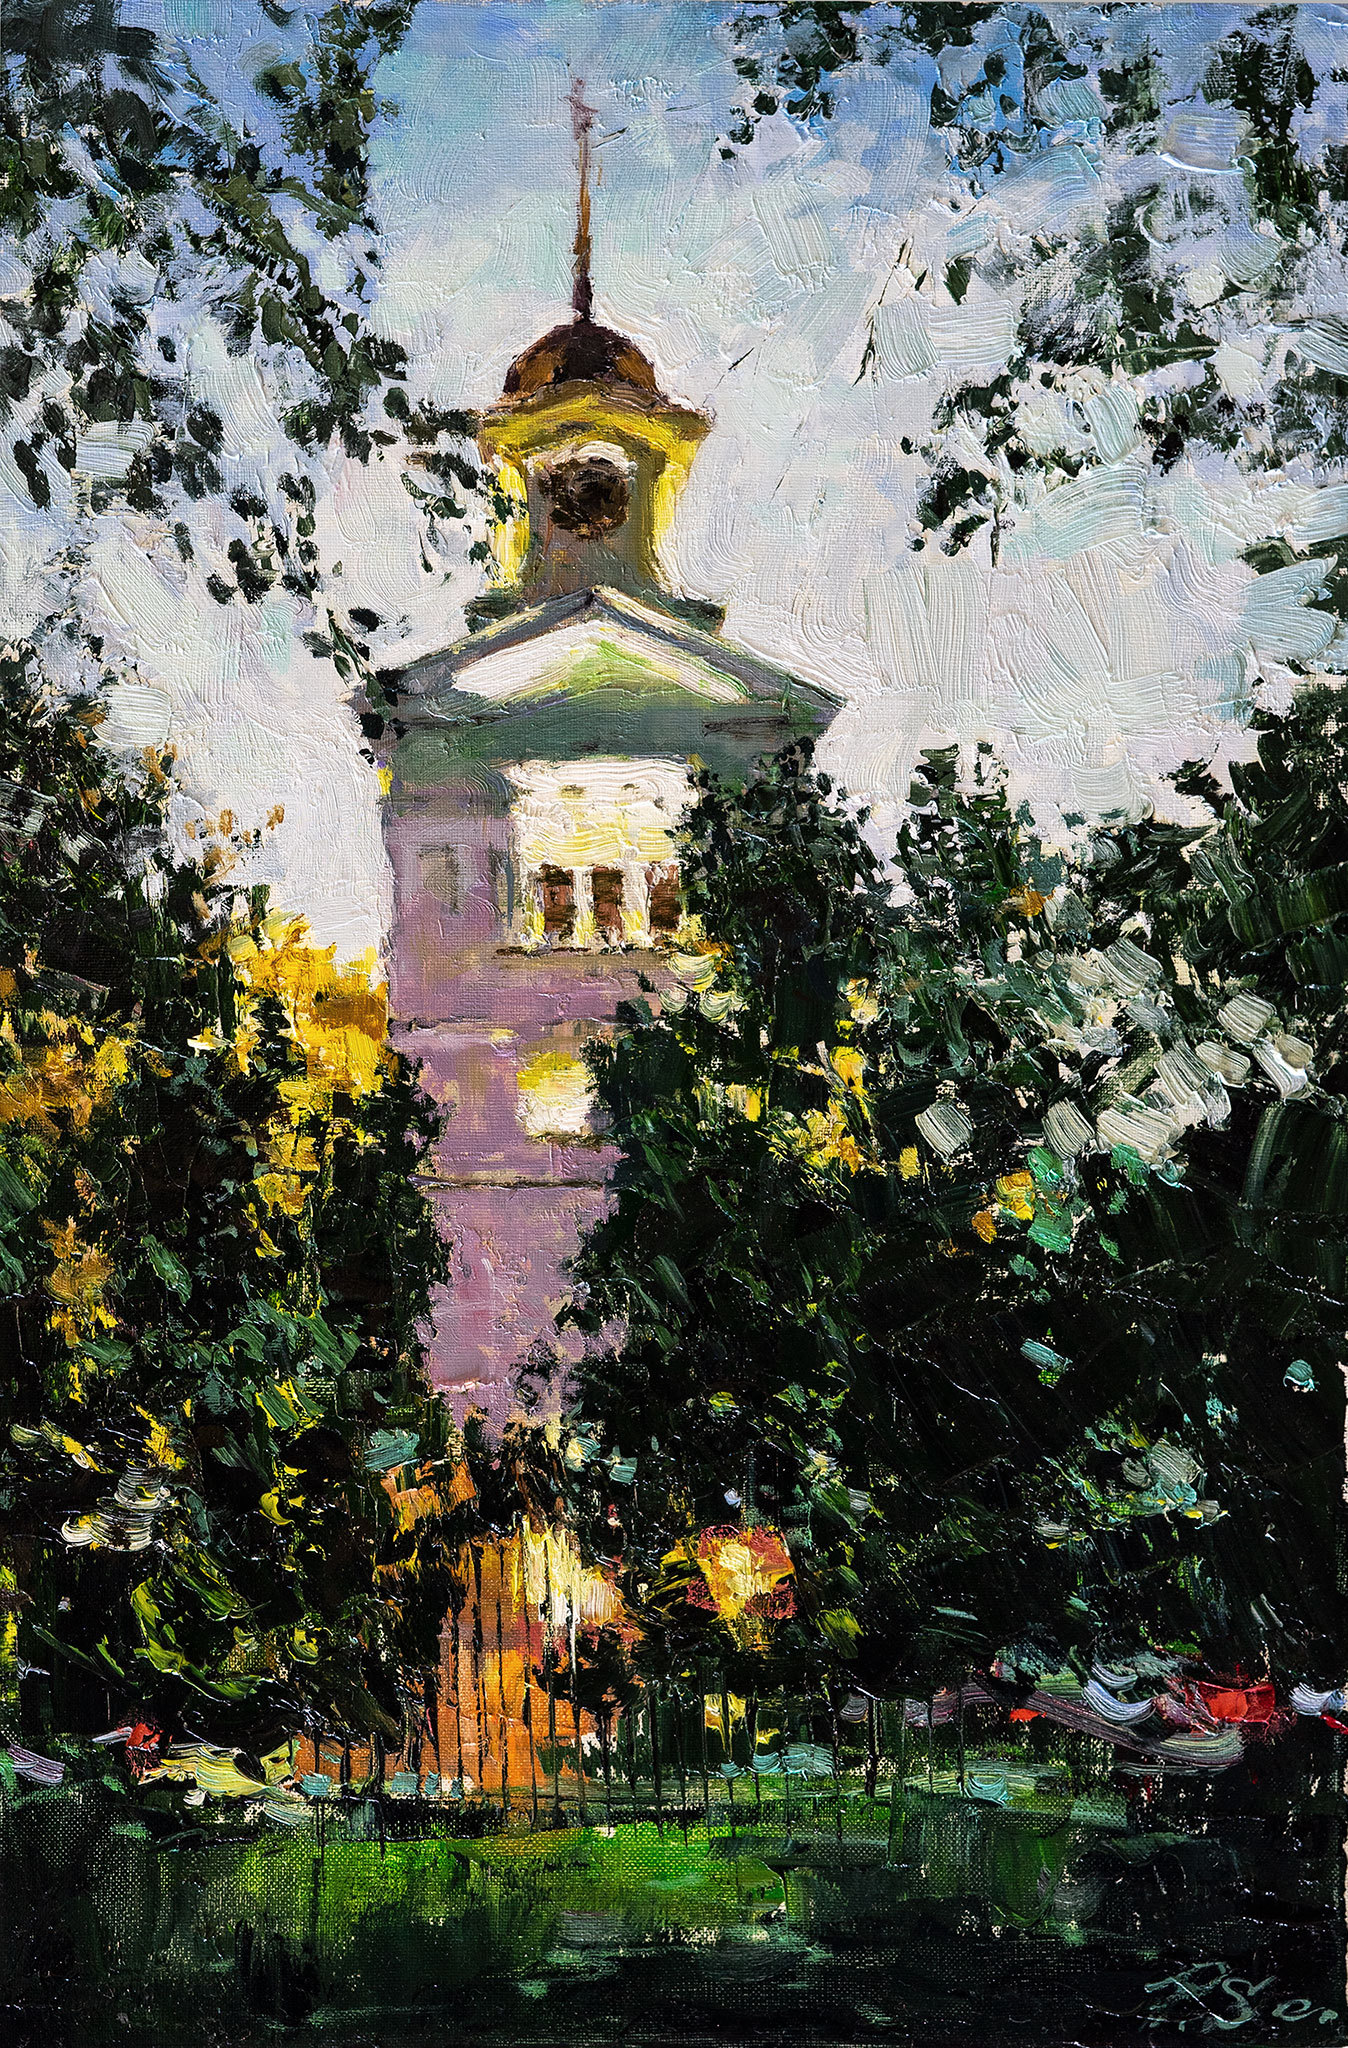 Evening in Bishop Garden - 1, Sergei Prokhorov, Buy the painting Oil